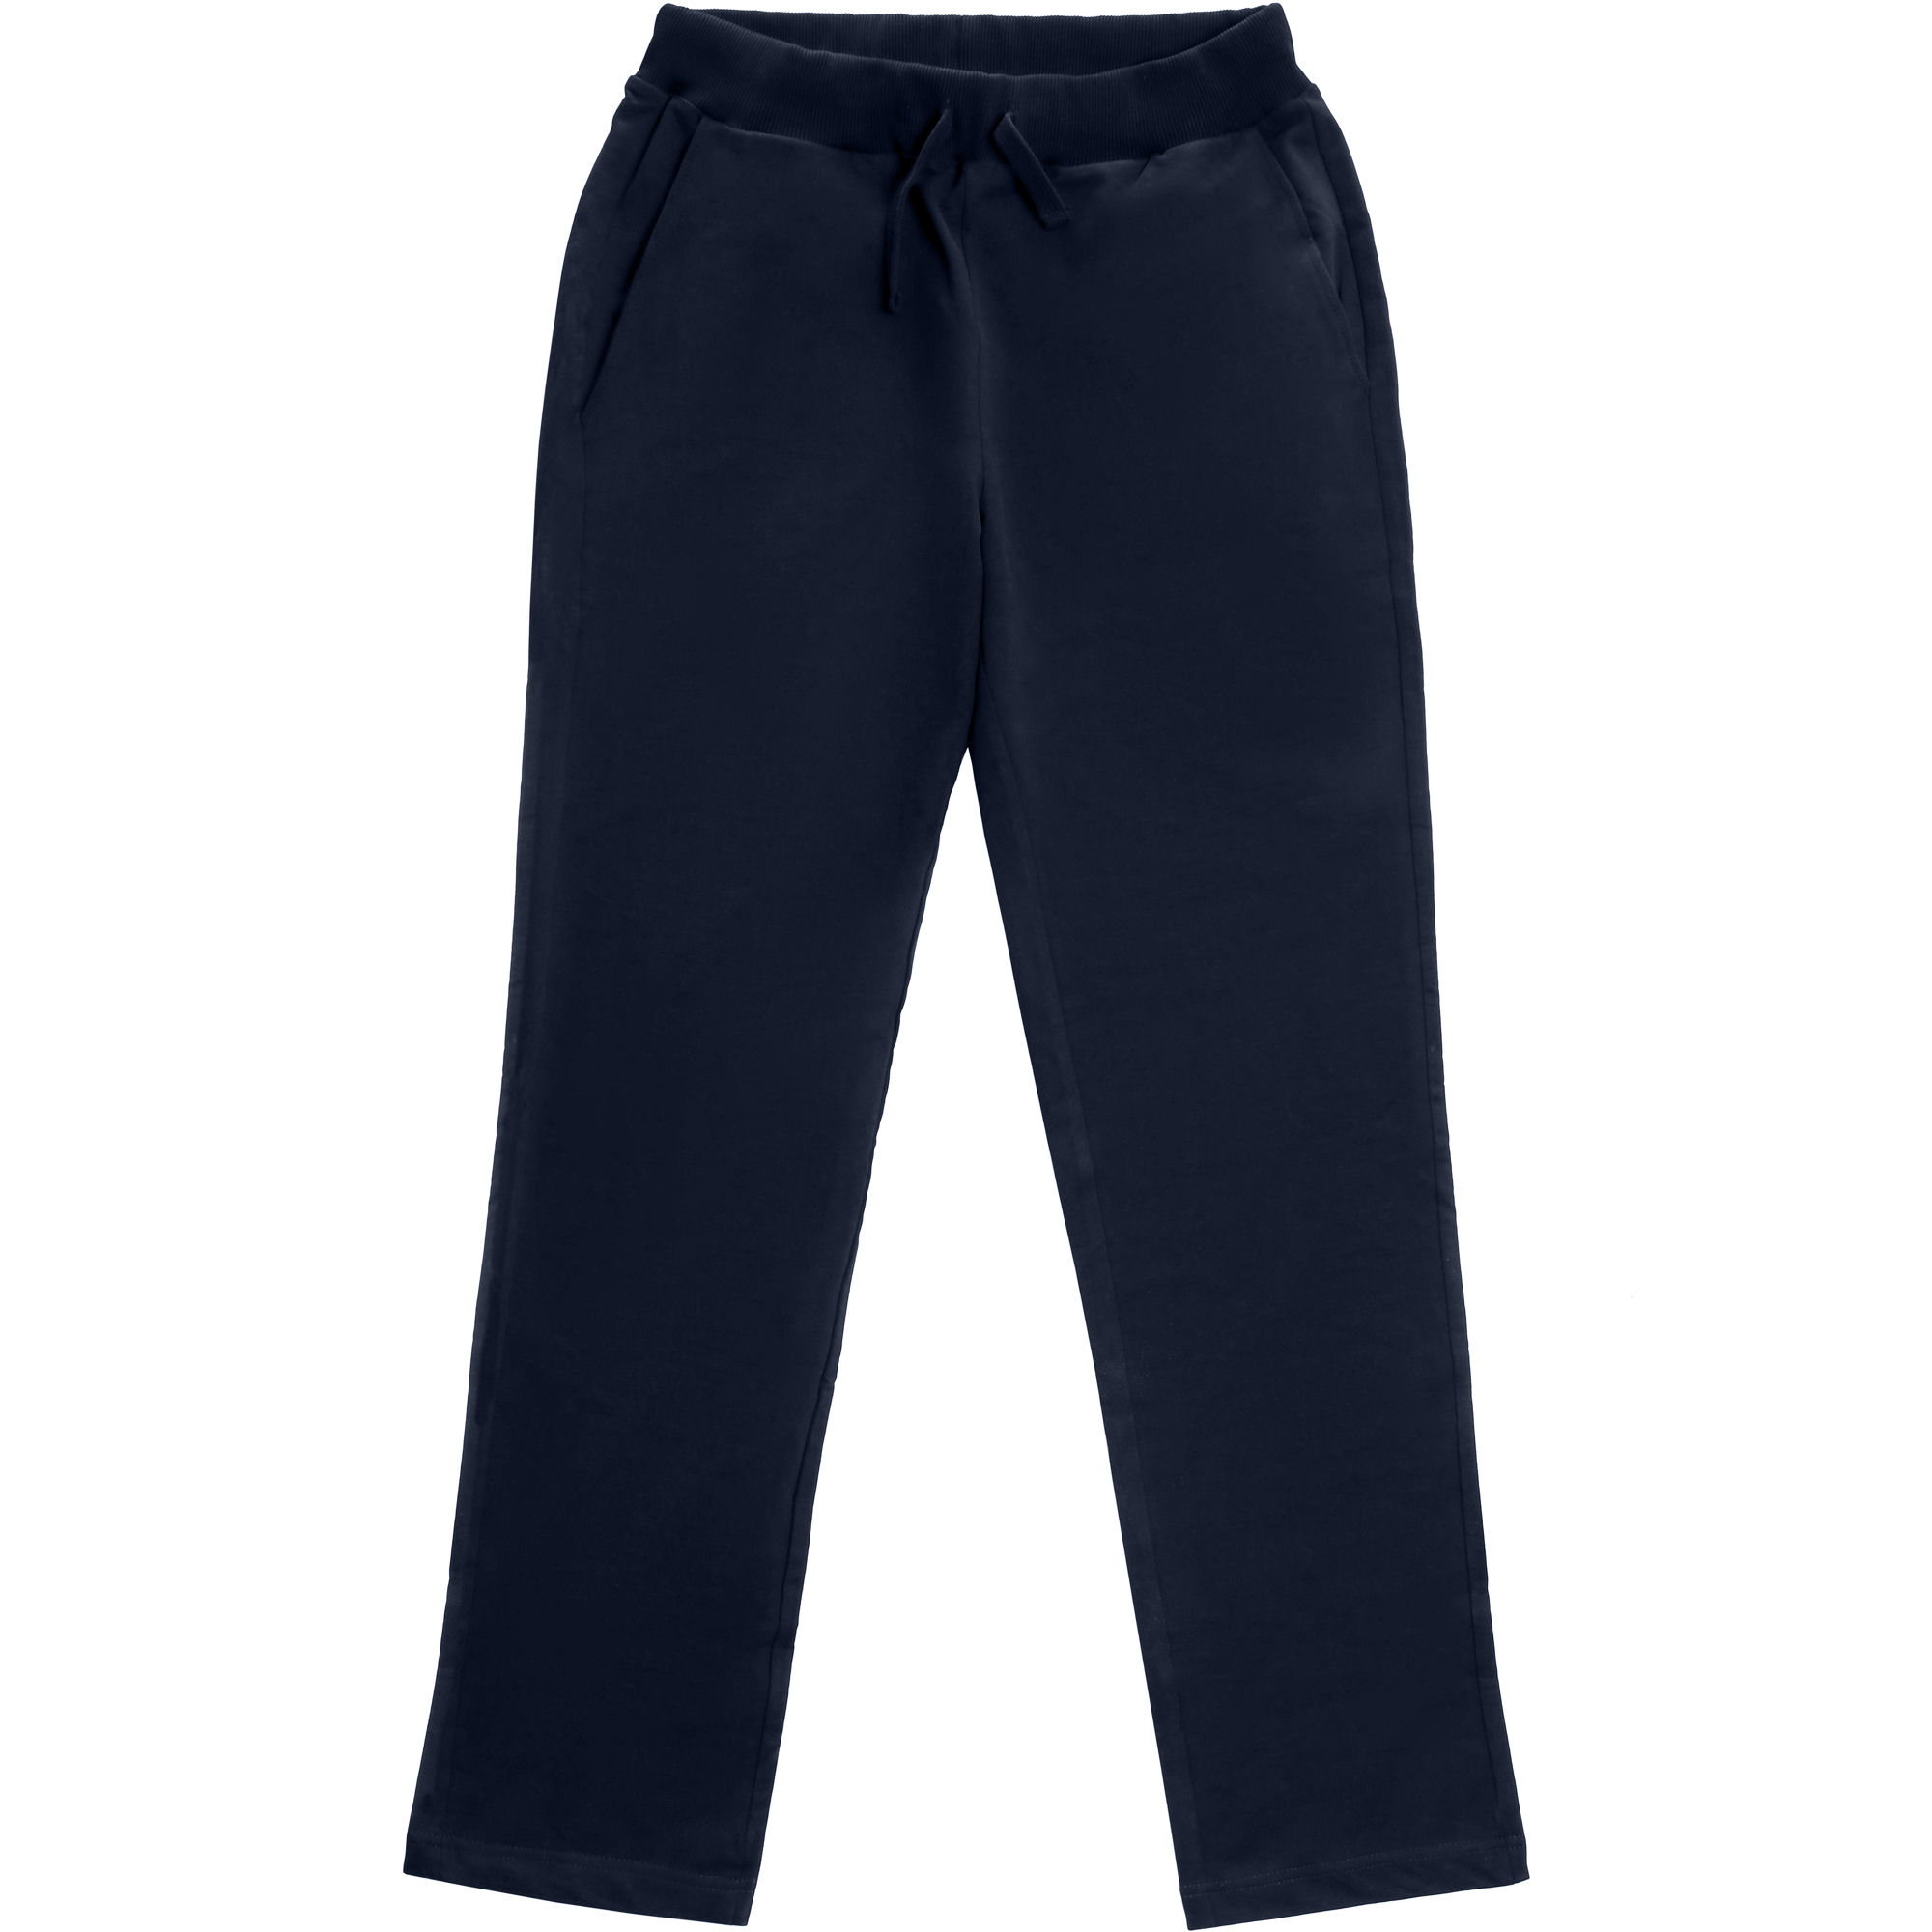 Мужские брюки Birlik тёмно-синие, цвет тёмно-синий, размер M - фото 1